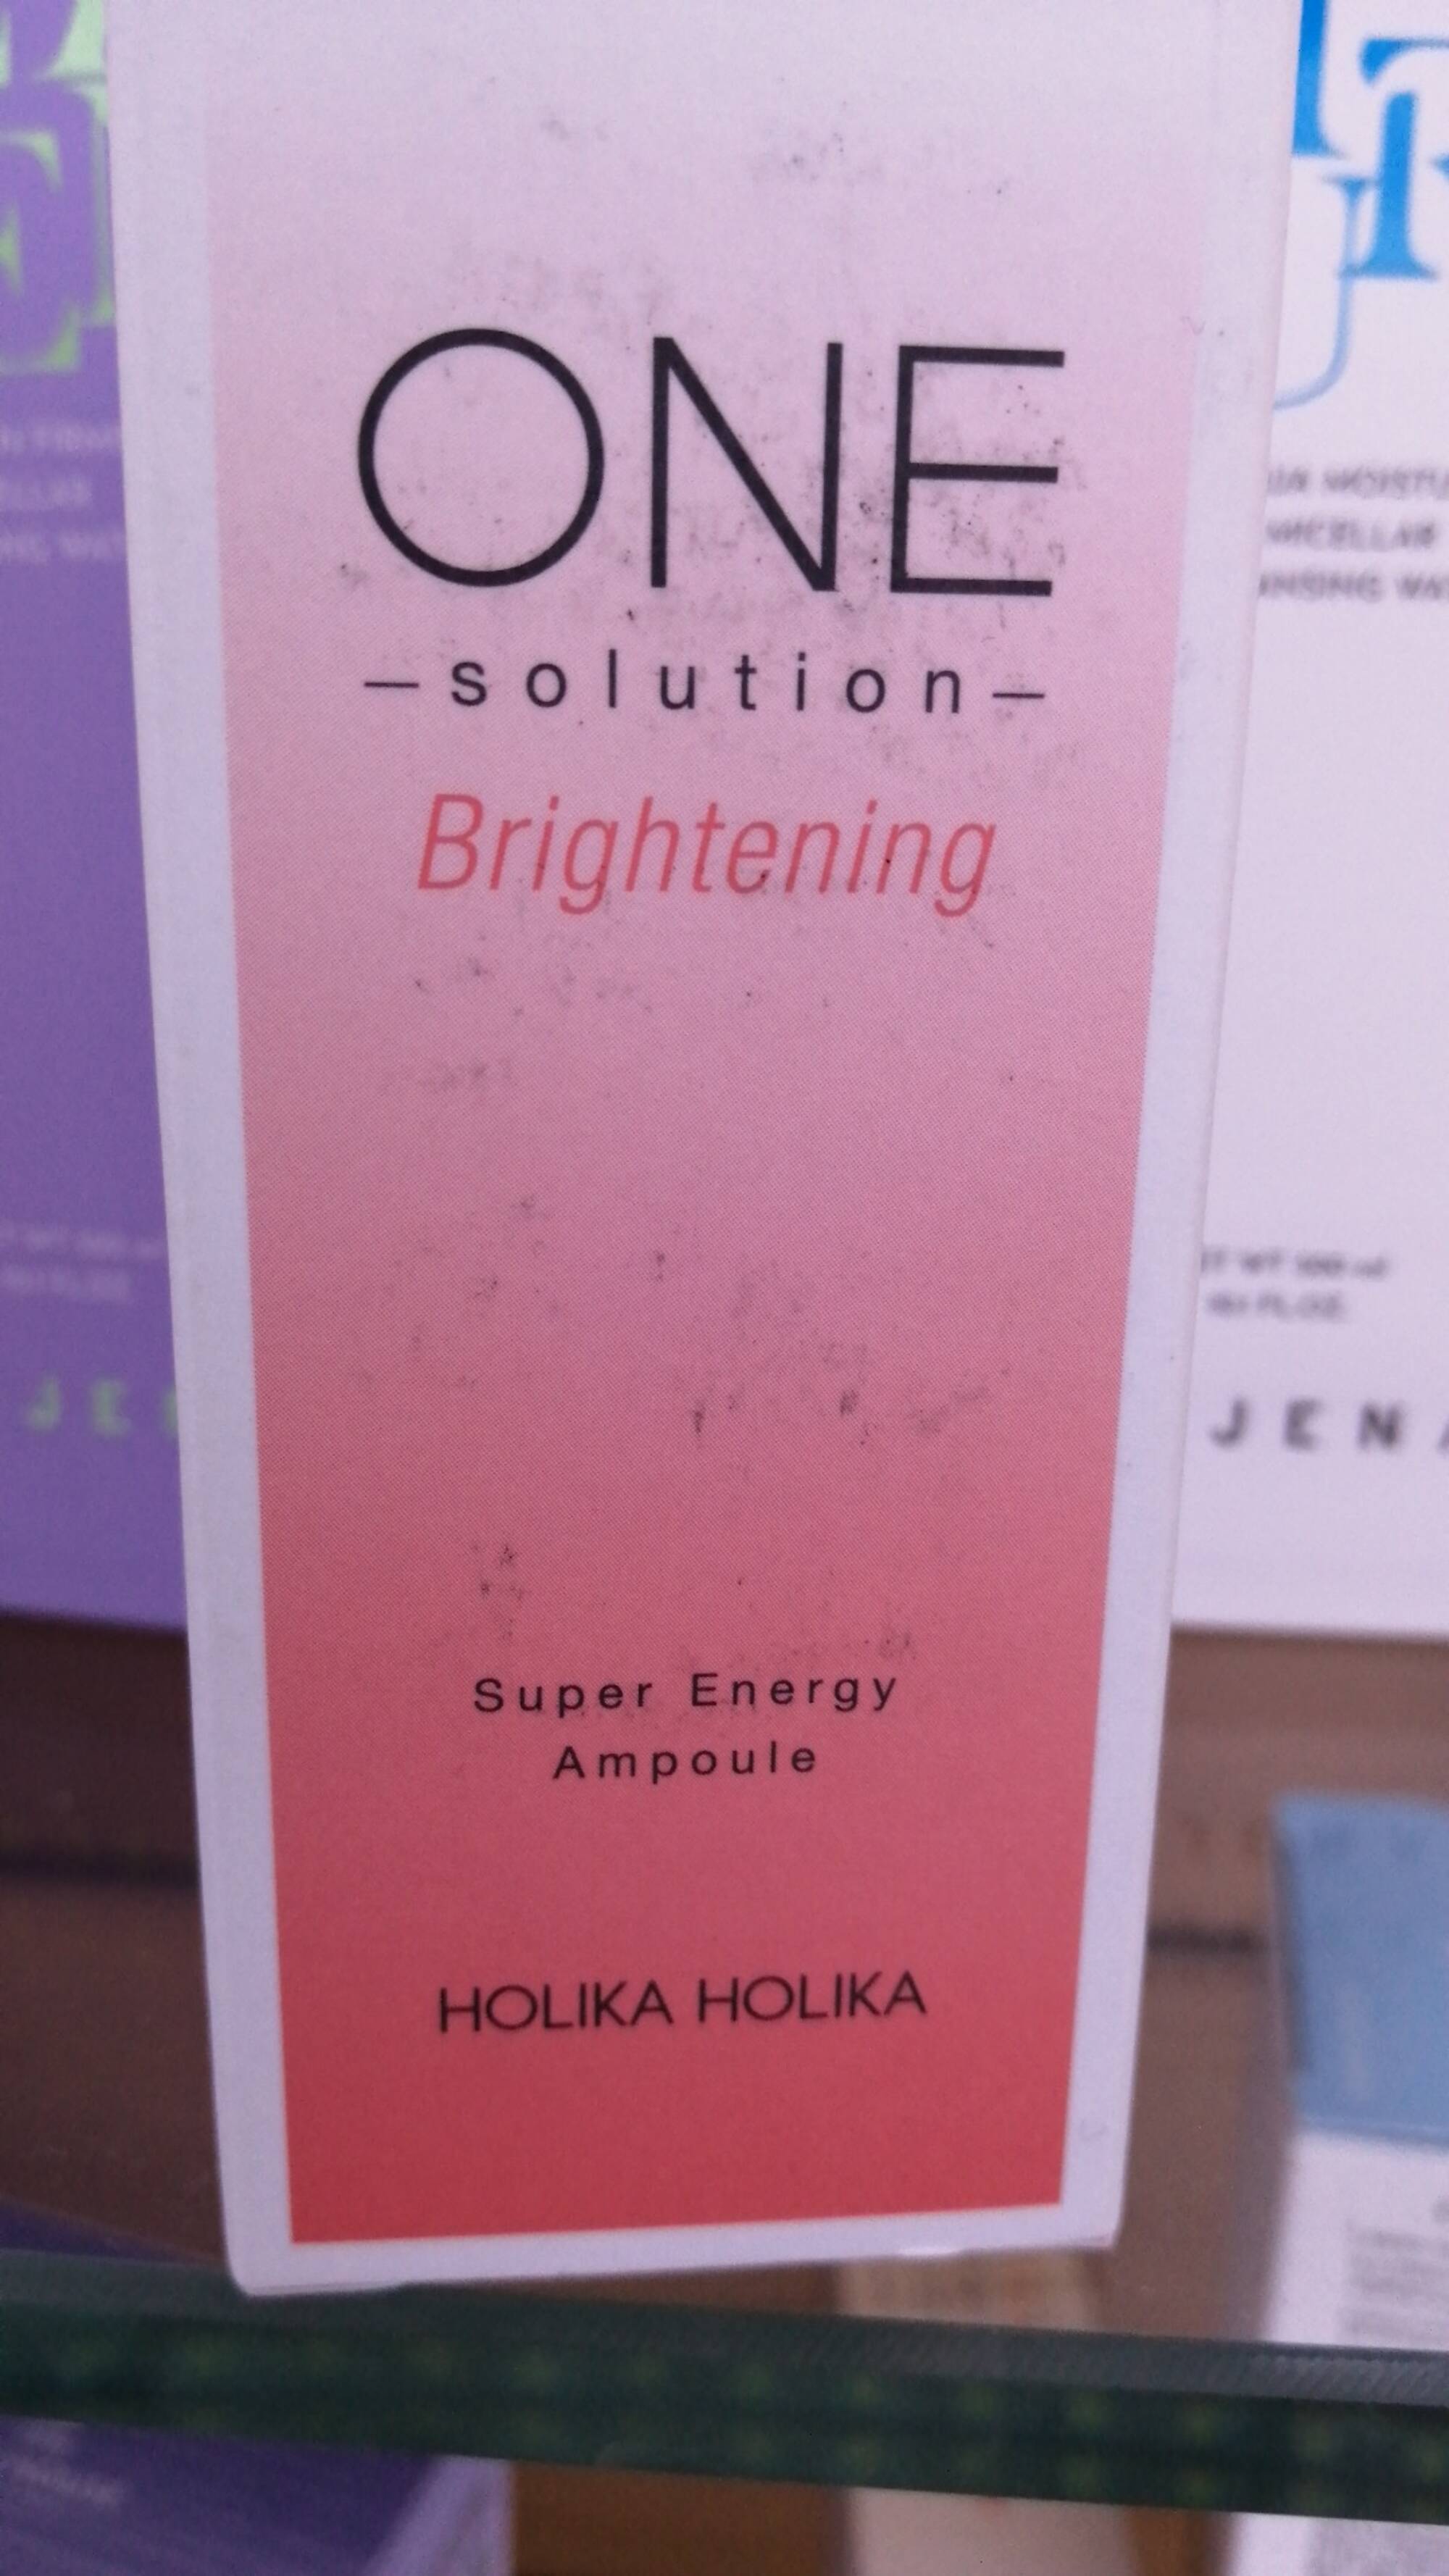 HOLIKA HOLIKA - One solution brightening